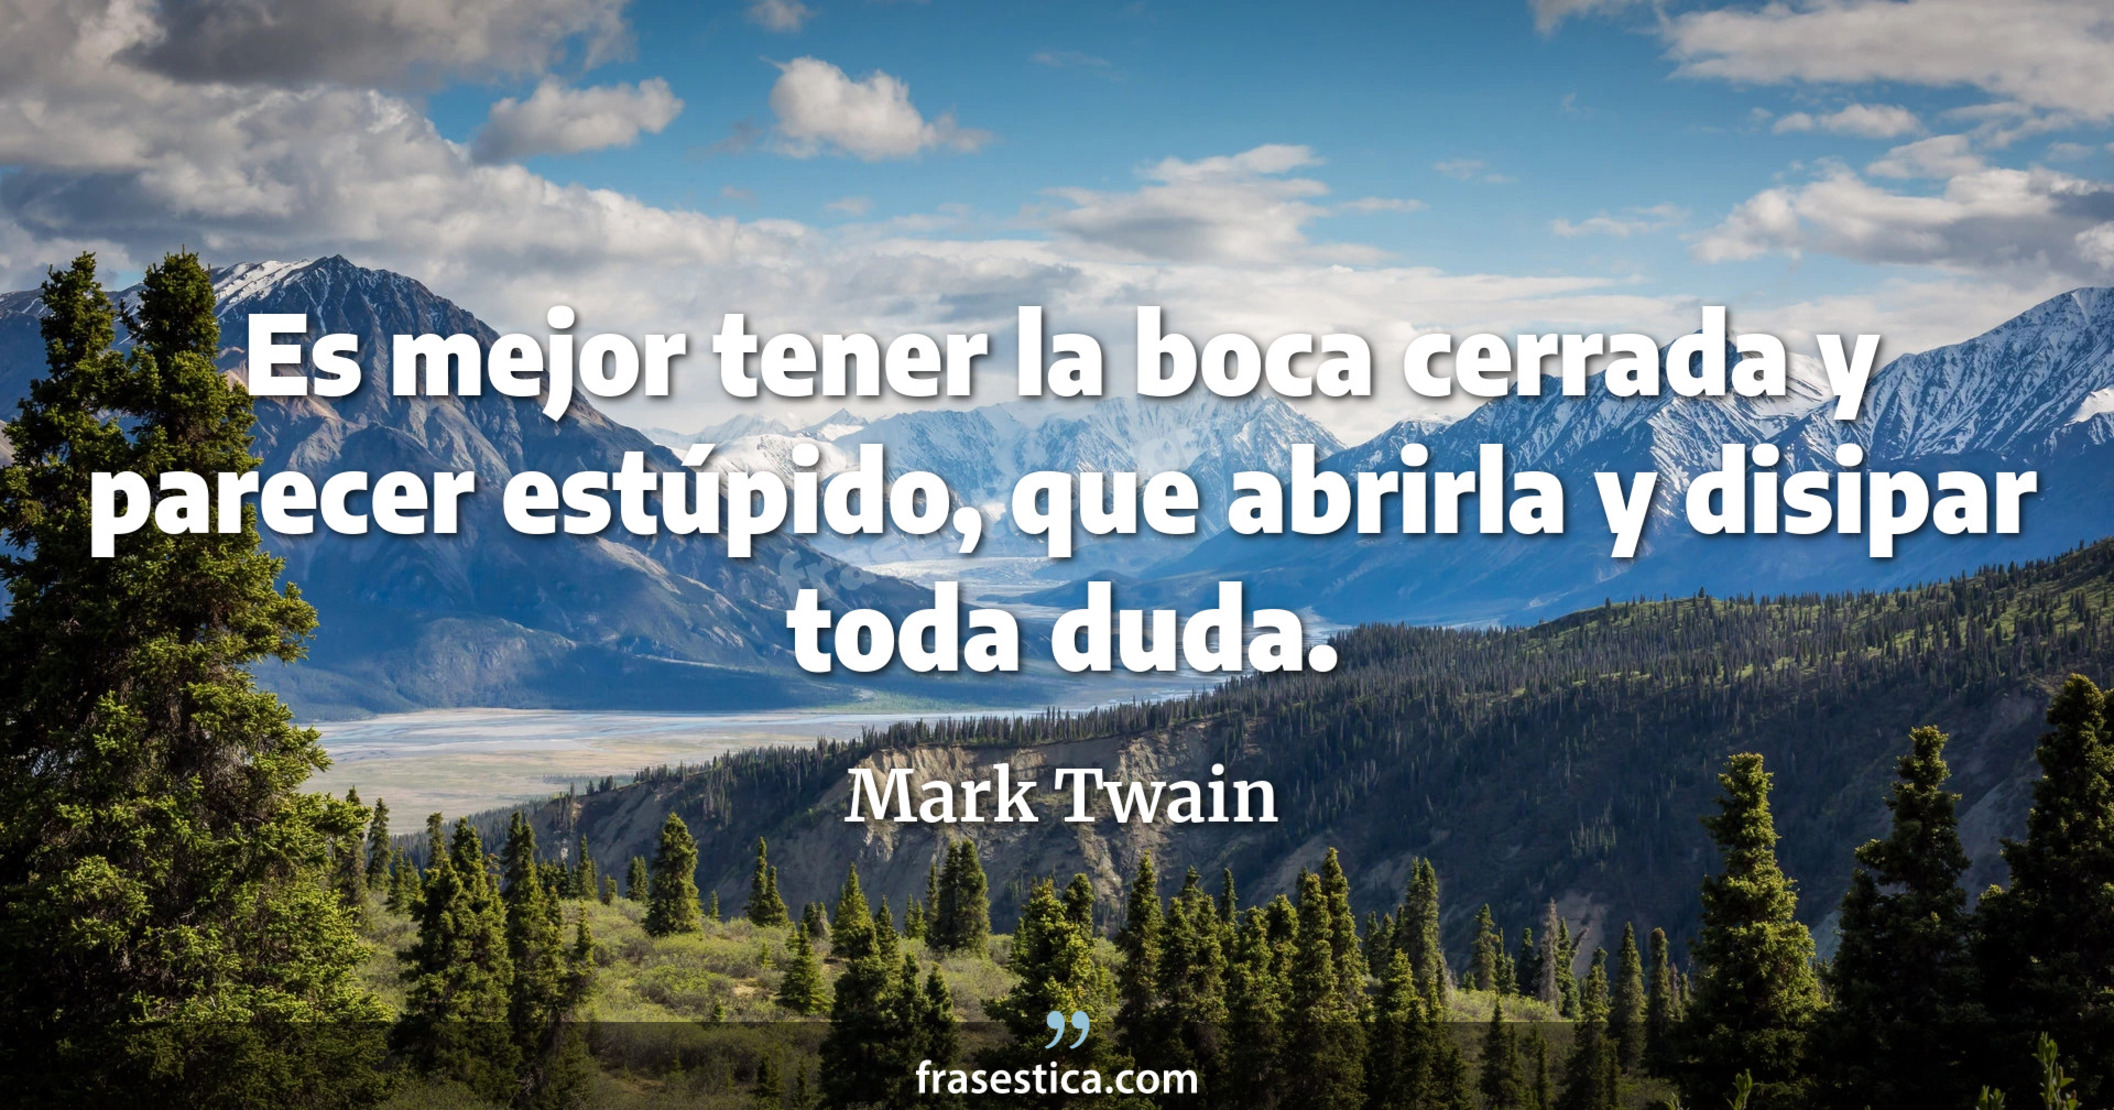 Es mejor tener la boca cerrada y parecer estúpido, que abrirla y disipar toda duda. - Mark Twain